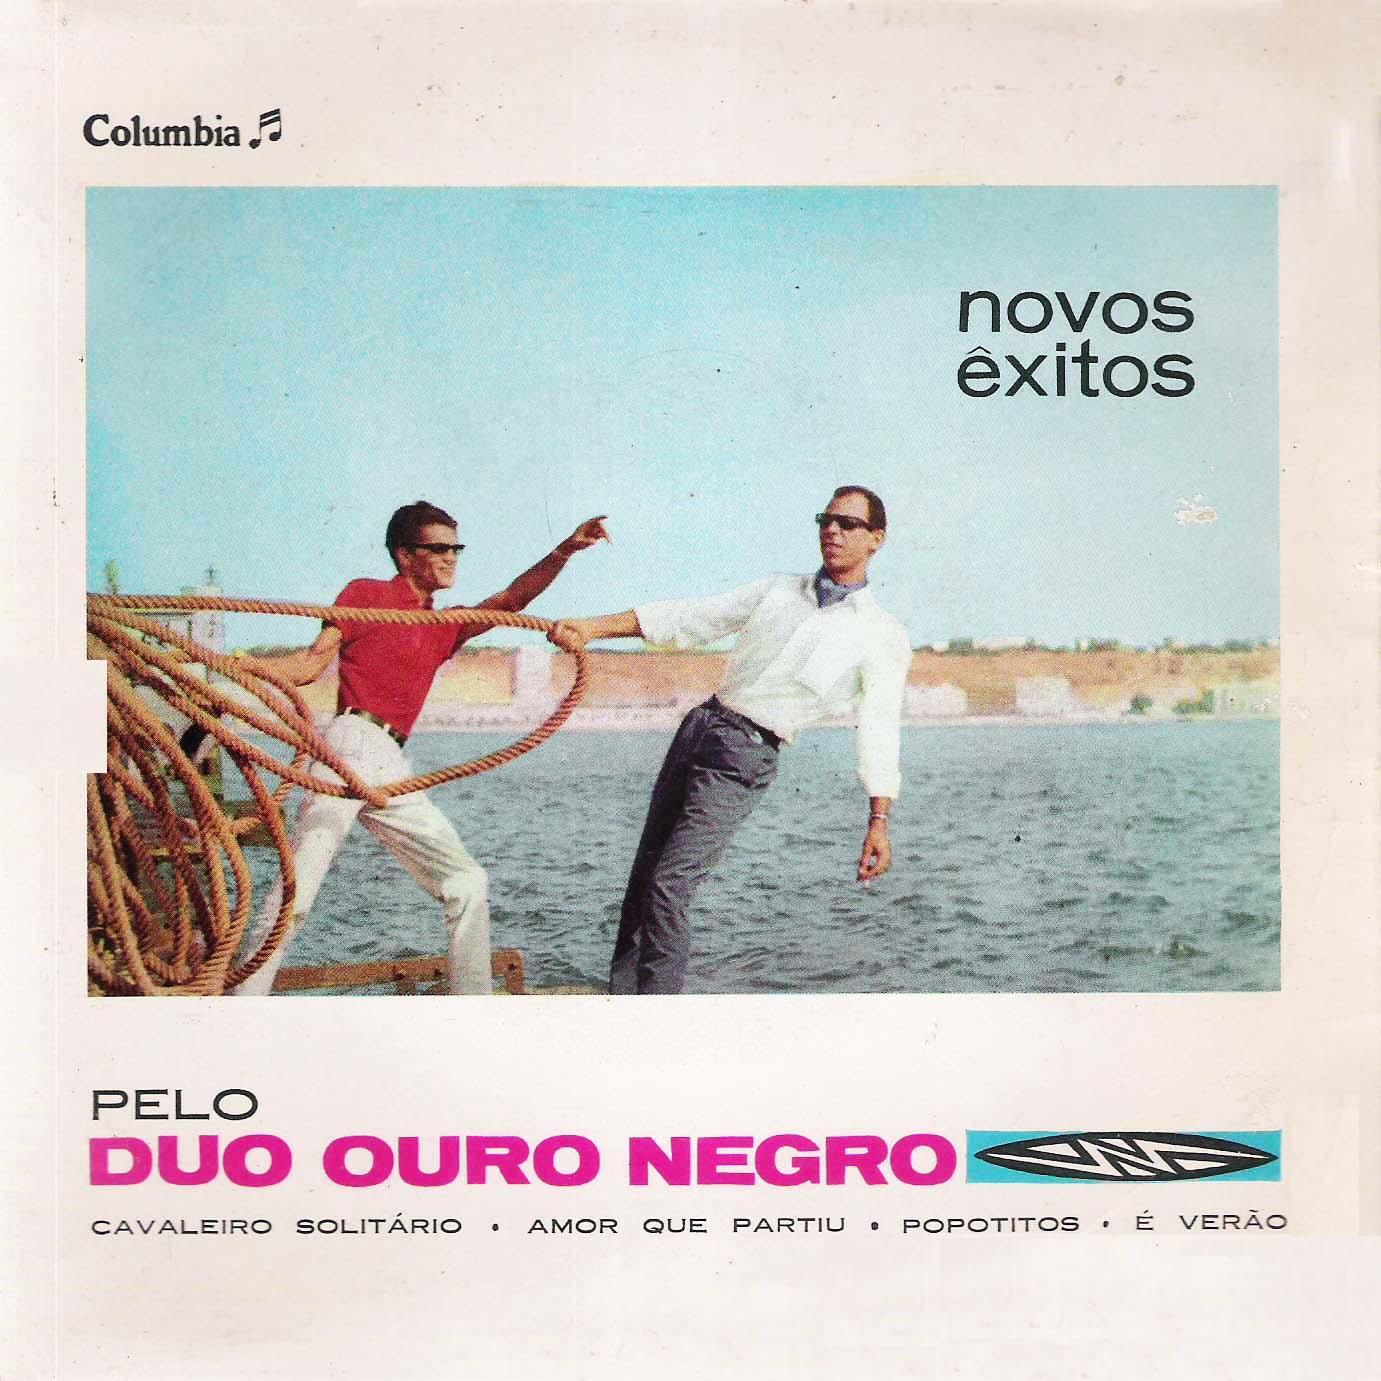 Duo Ouro Negro - Novos Êxitos Pelo Duo Ouro Negro (1964) Duo+Ouro+Negro+-+Novos+%C3%8Axitos+Pelo+Duo+Ouro+Negro++-+Front